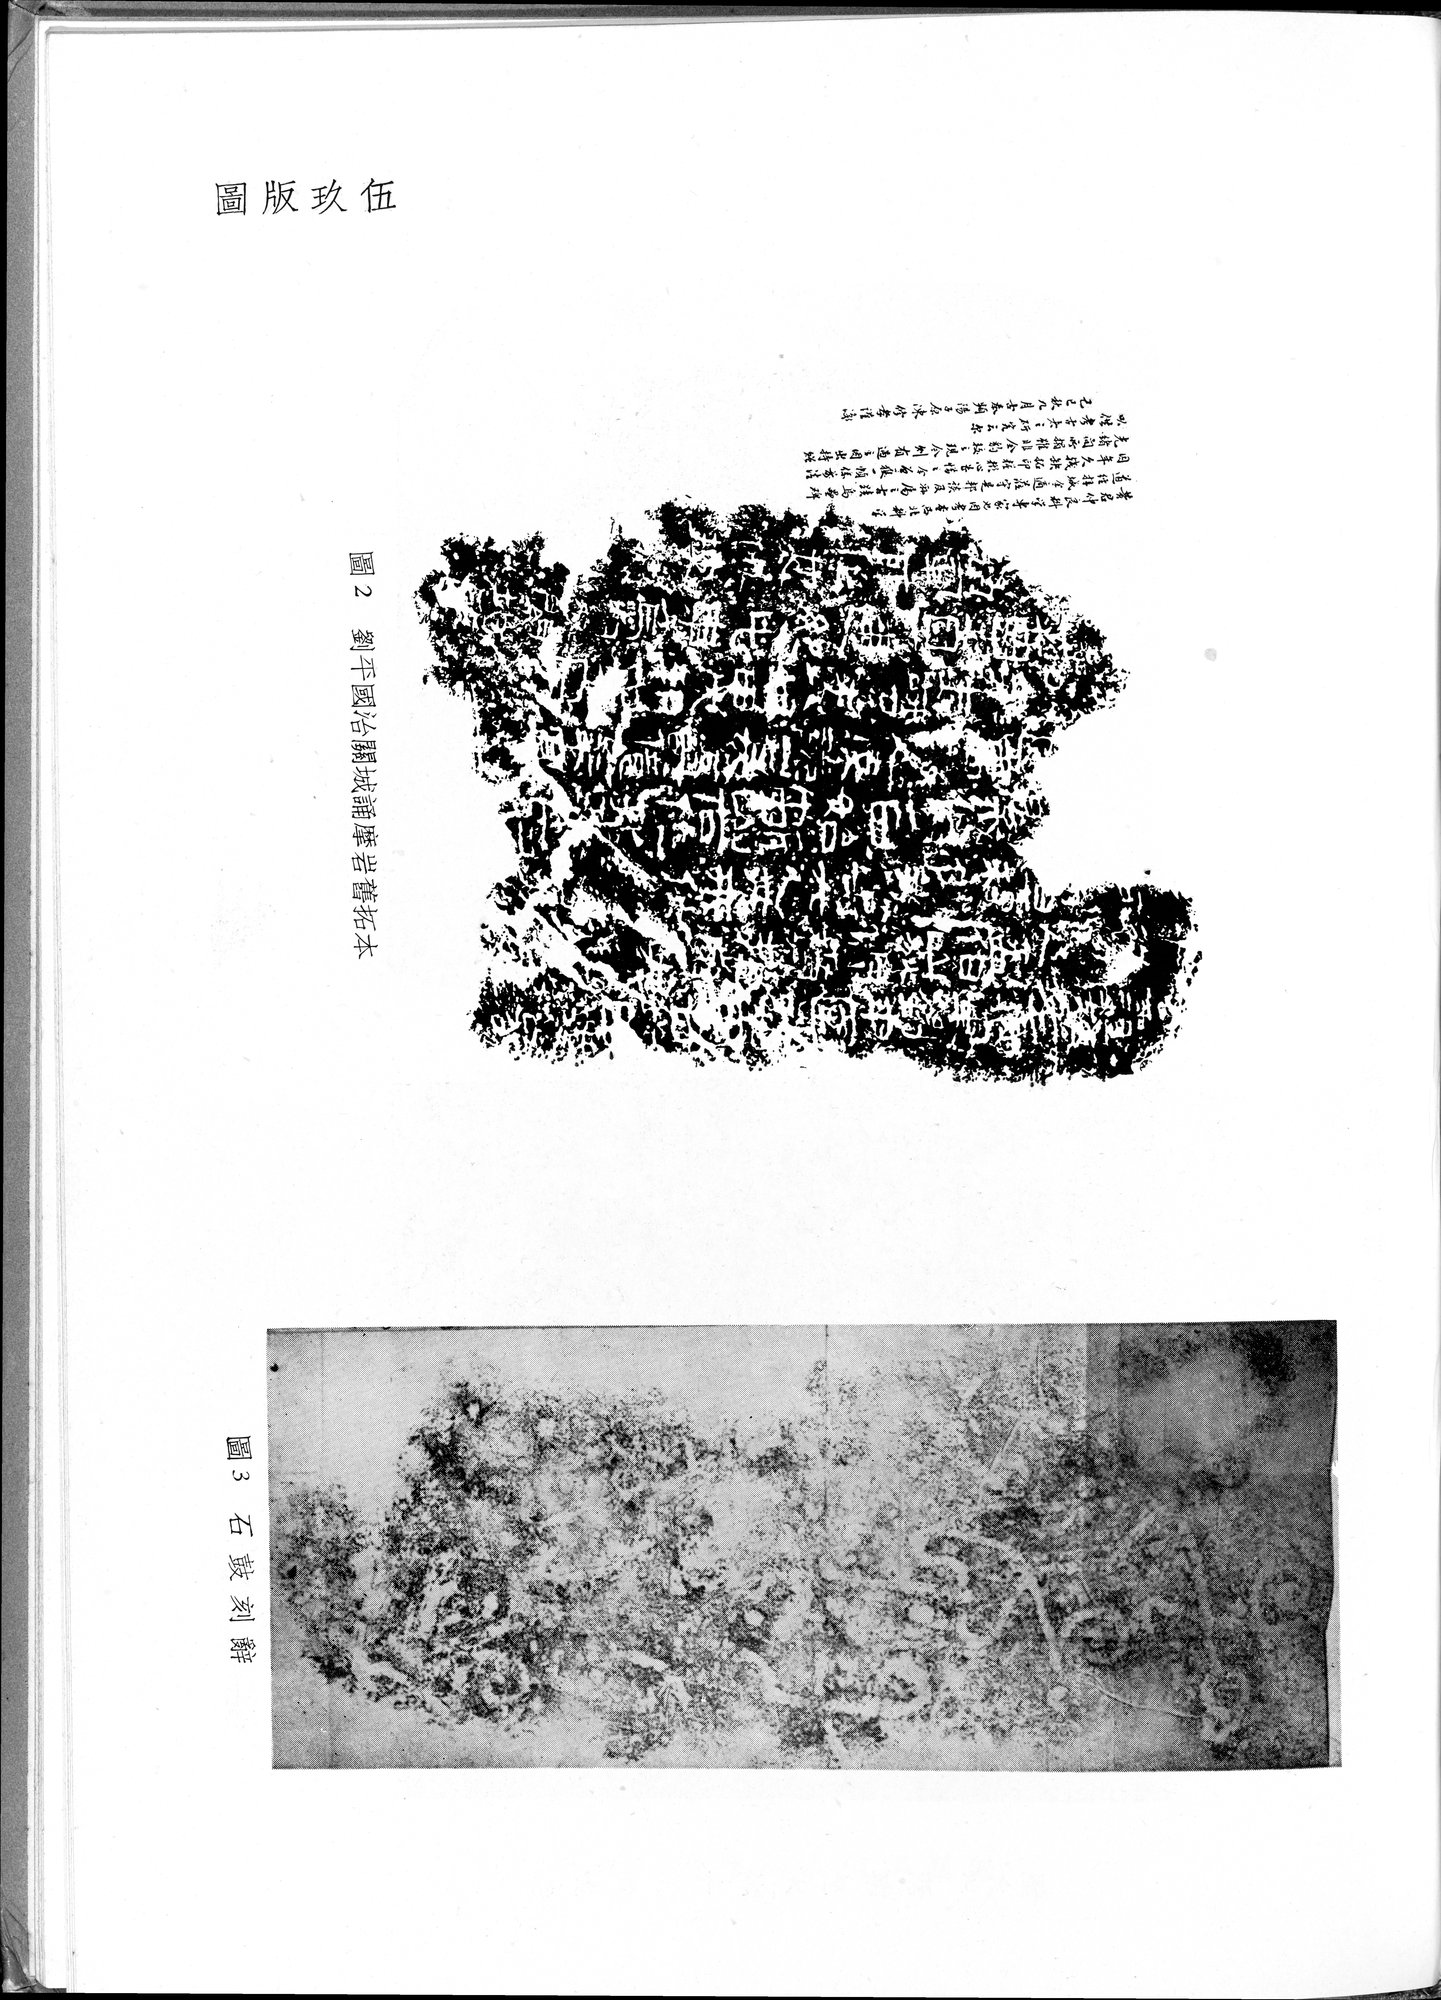 塔里木盆地考古記 : vol.1 / Page 329 (Grayscale High Resolution Image)